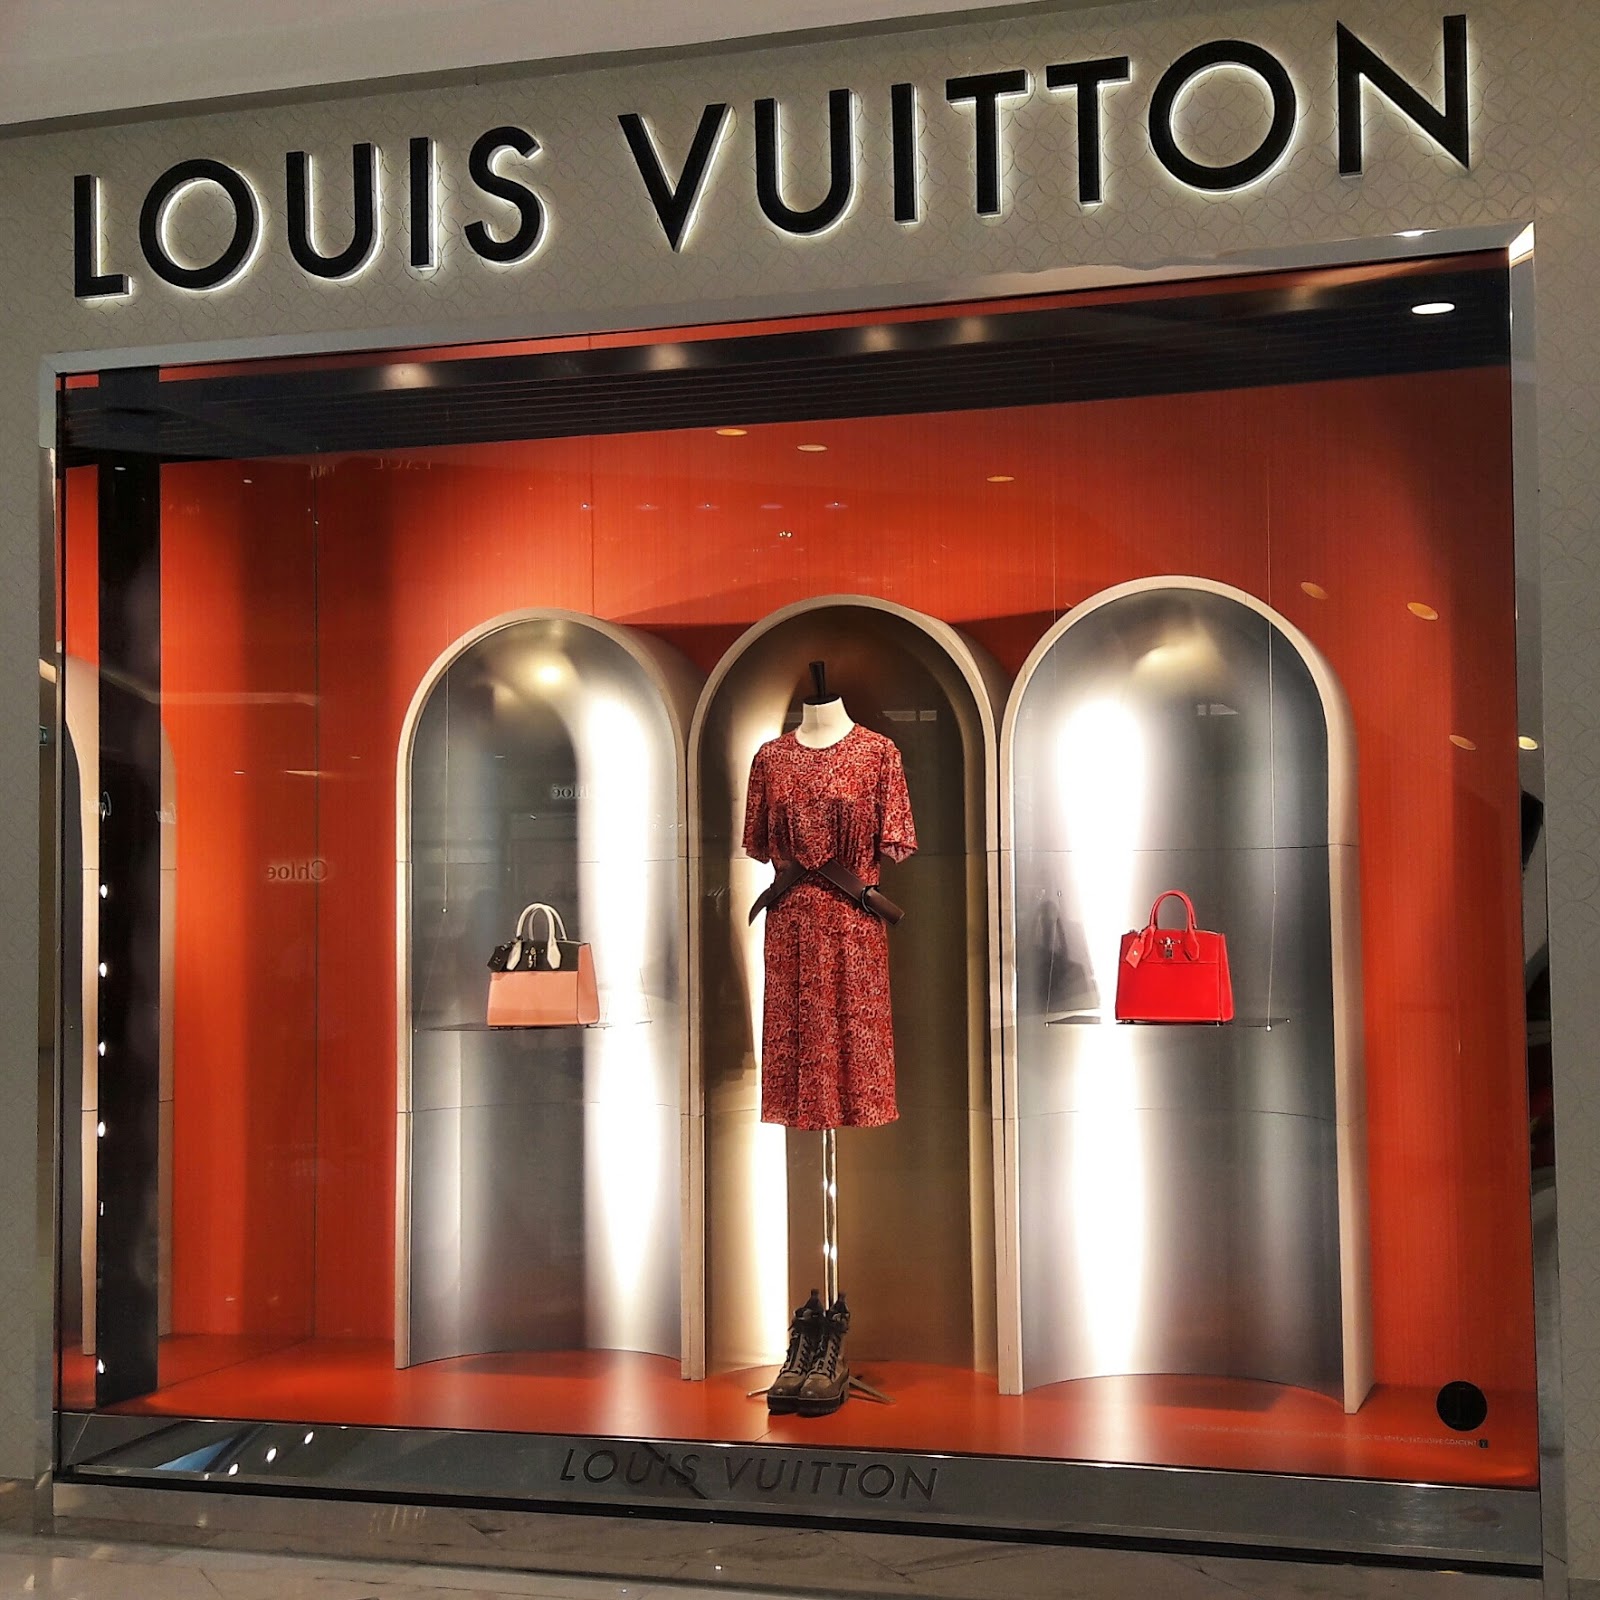 LOUIS VUITTON window display at Emporium in Bangkok